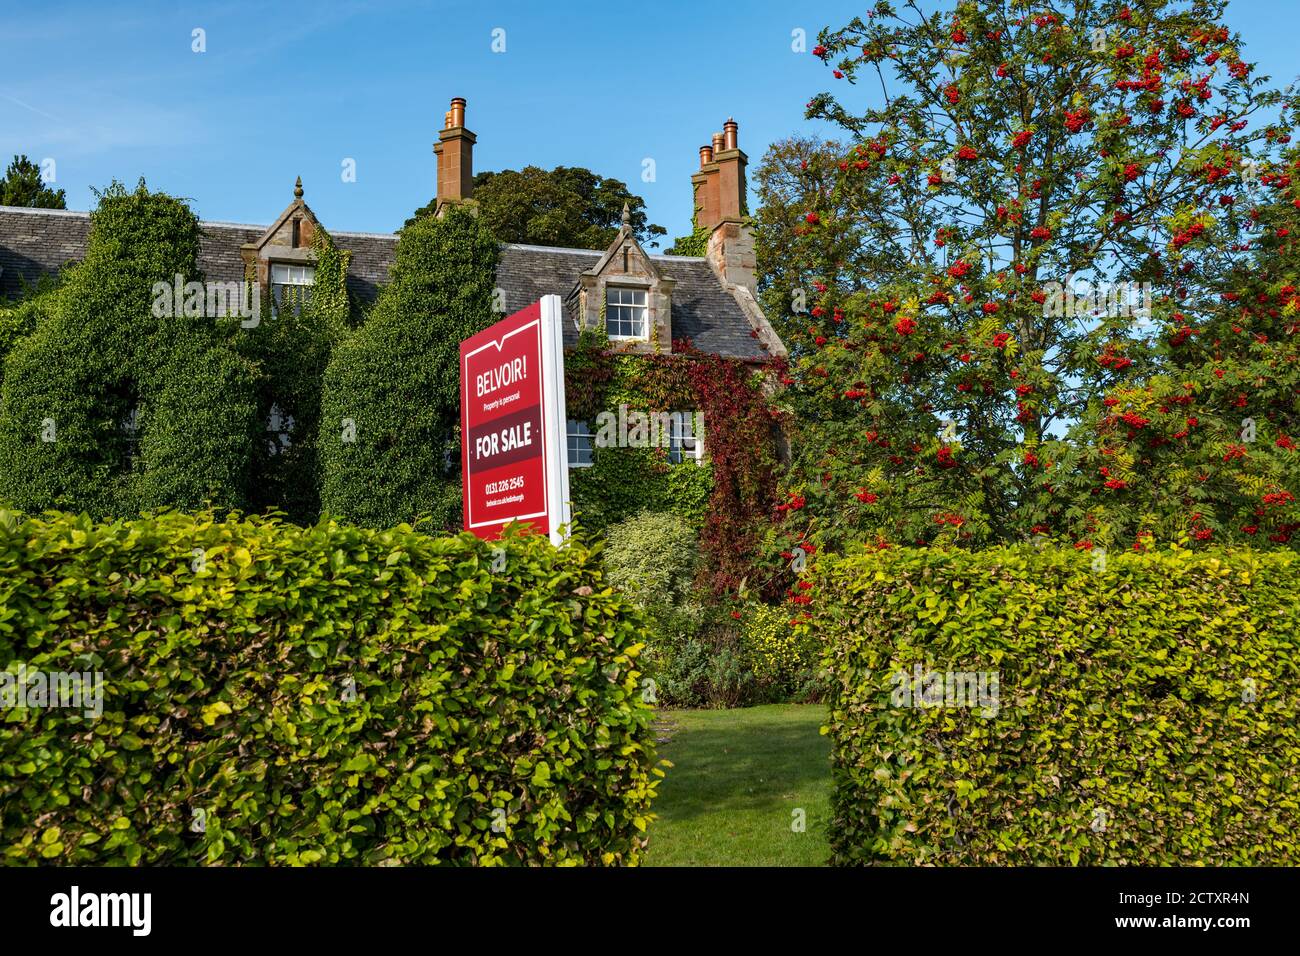 Zum Verkauf Schild auf viktorianischen Haus mit Herbst roten Efeu & Berg Esche oder Eberesche mit roten Beeren, Dirleton Dorf, East Lothian, Schottland, UK Stockfoto